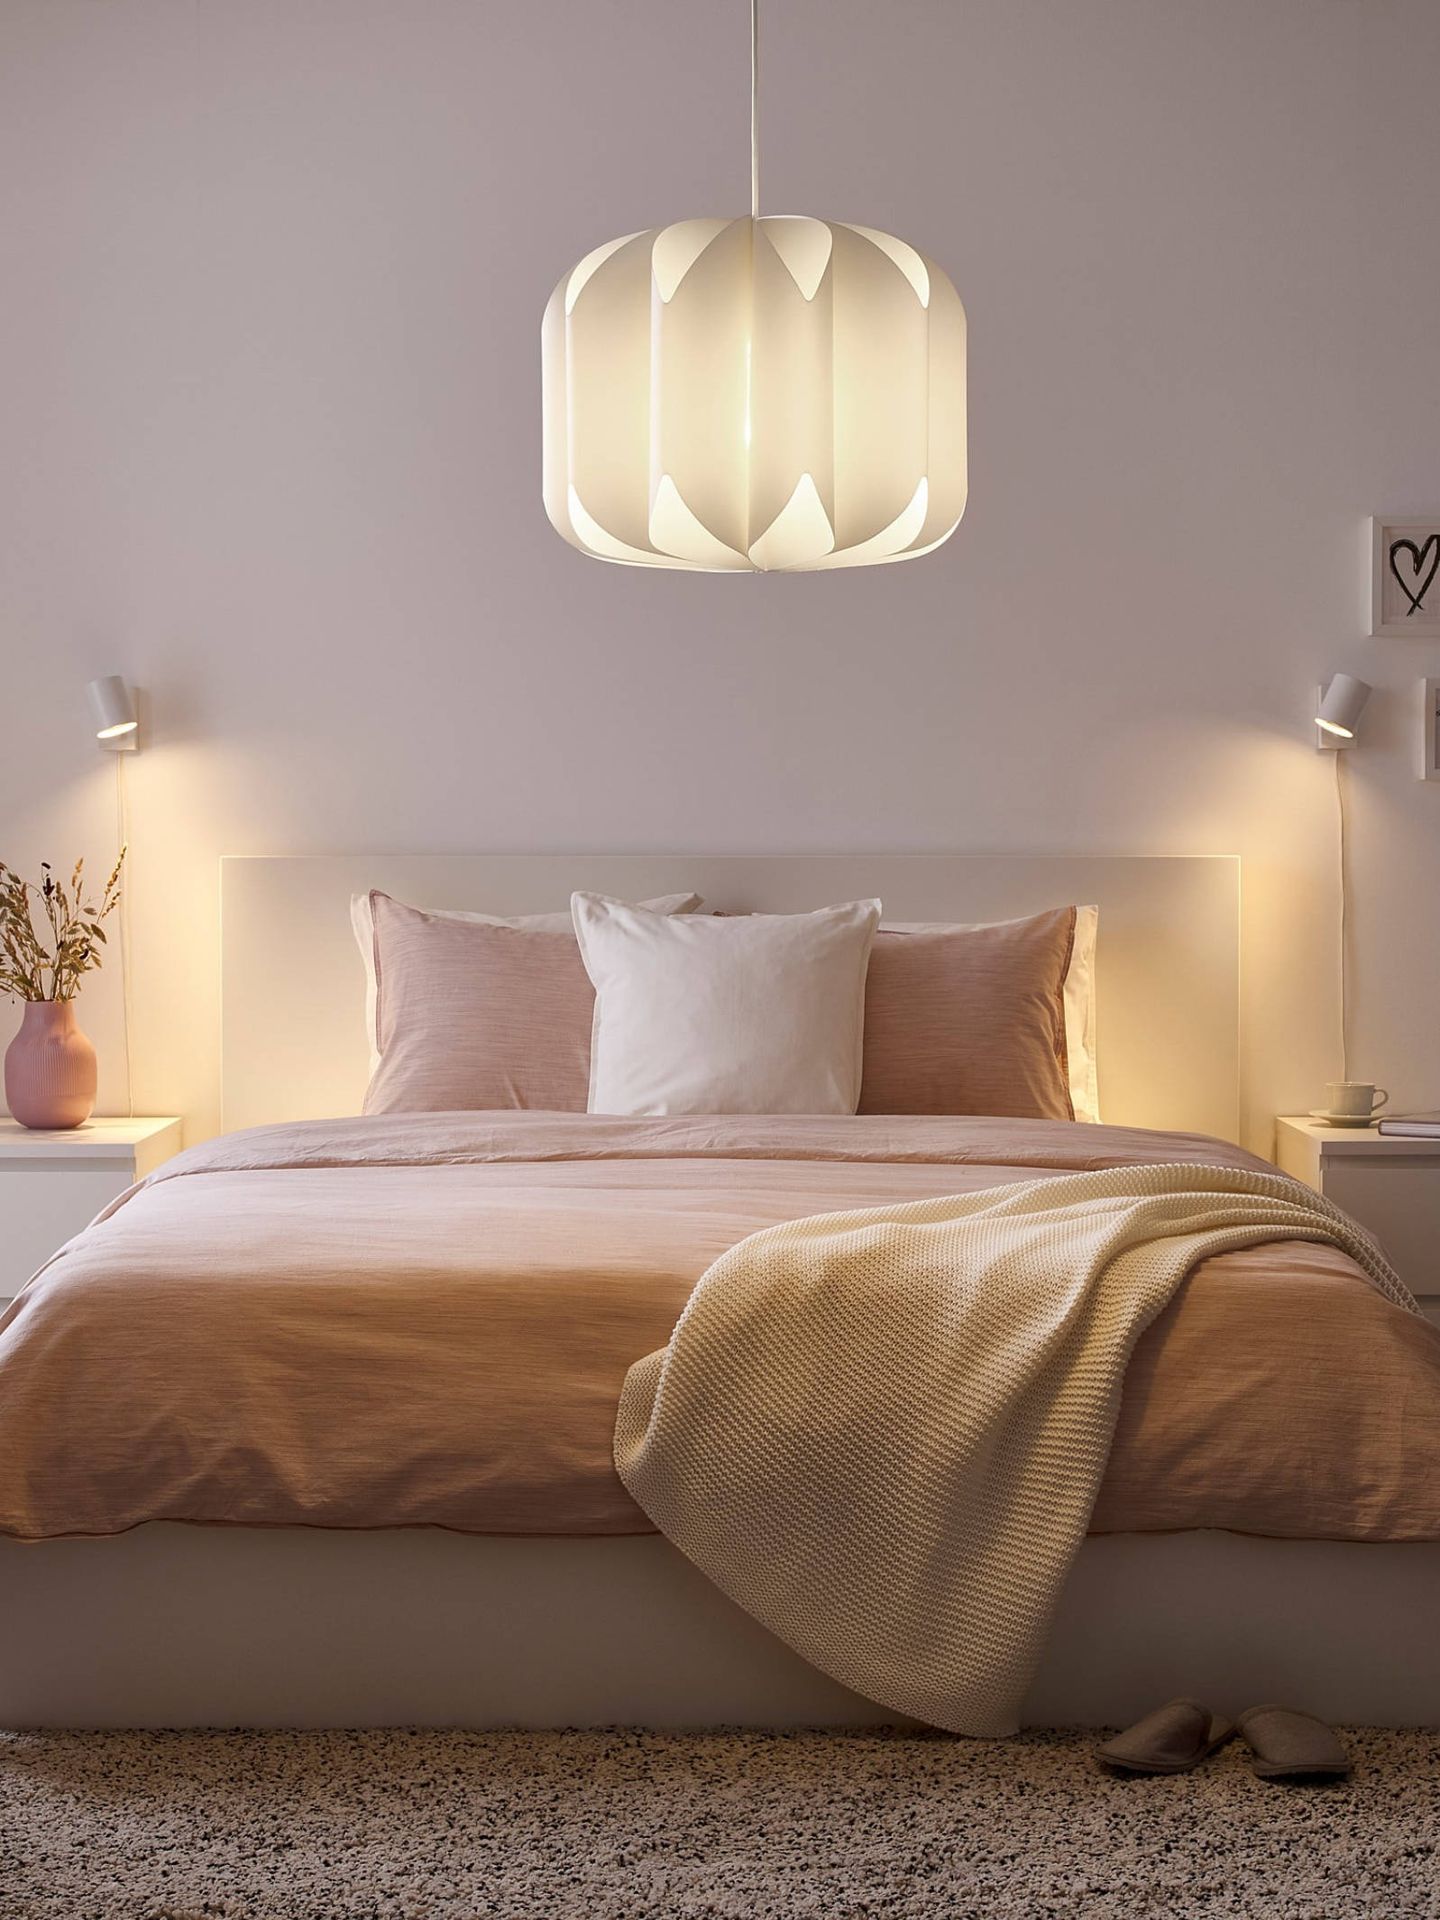 Lámparas de Ikea para una decoración perfecta en tu hogar. (Cortesía)